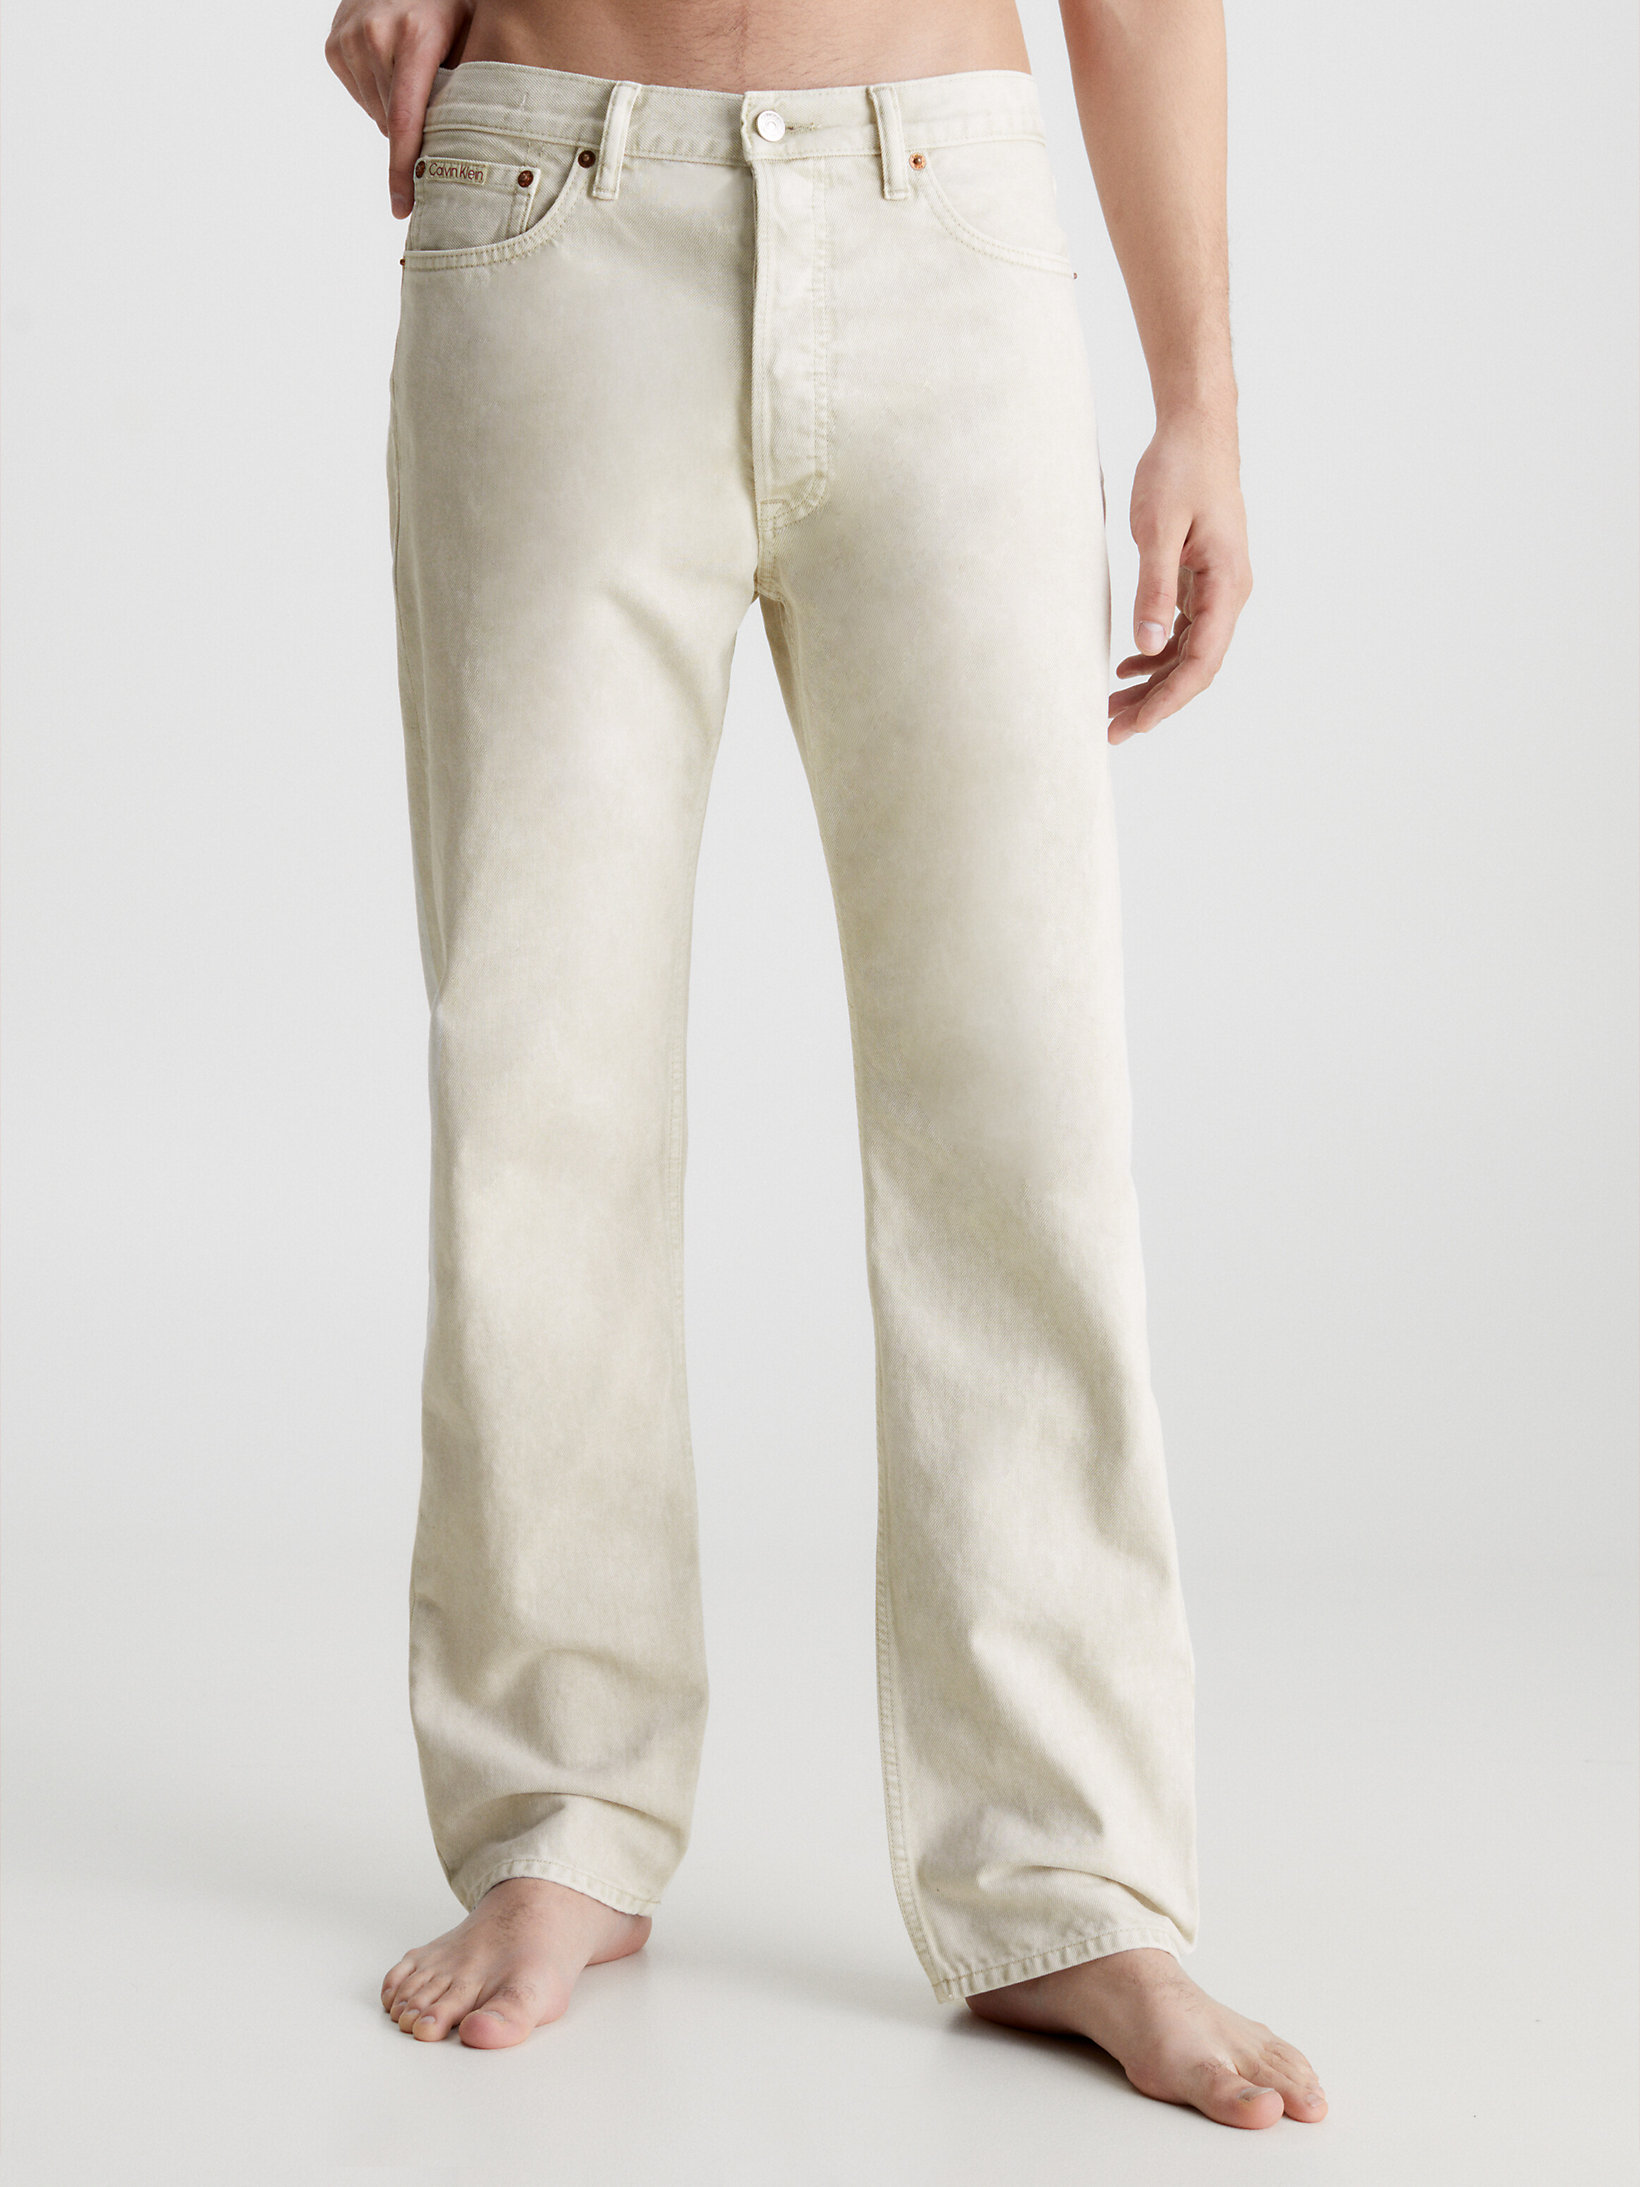 Denim > Unisex Straight Jeans – CK Standards > undefined Herren - Calvin Klein